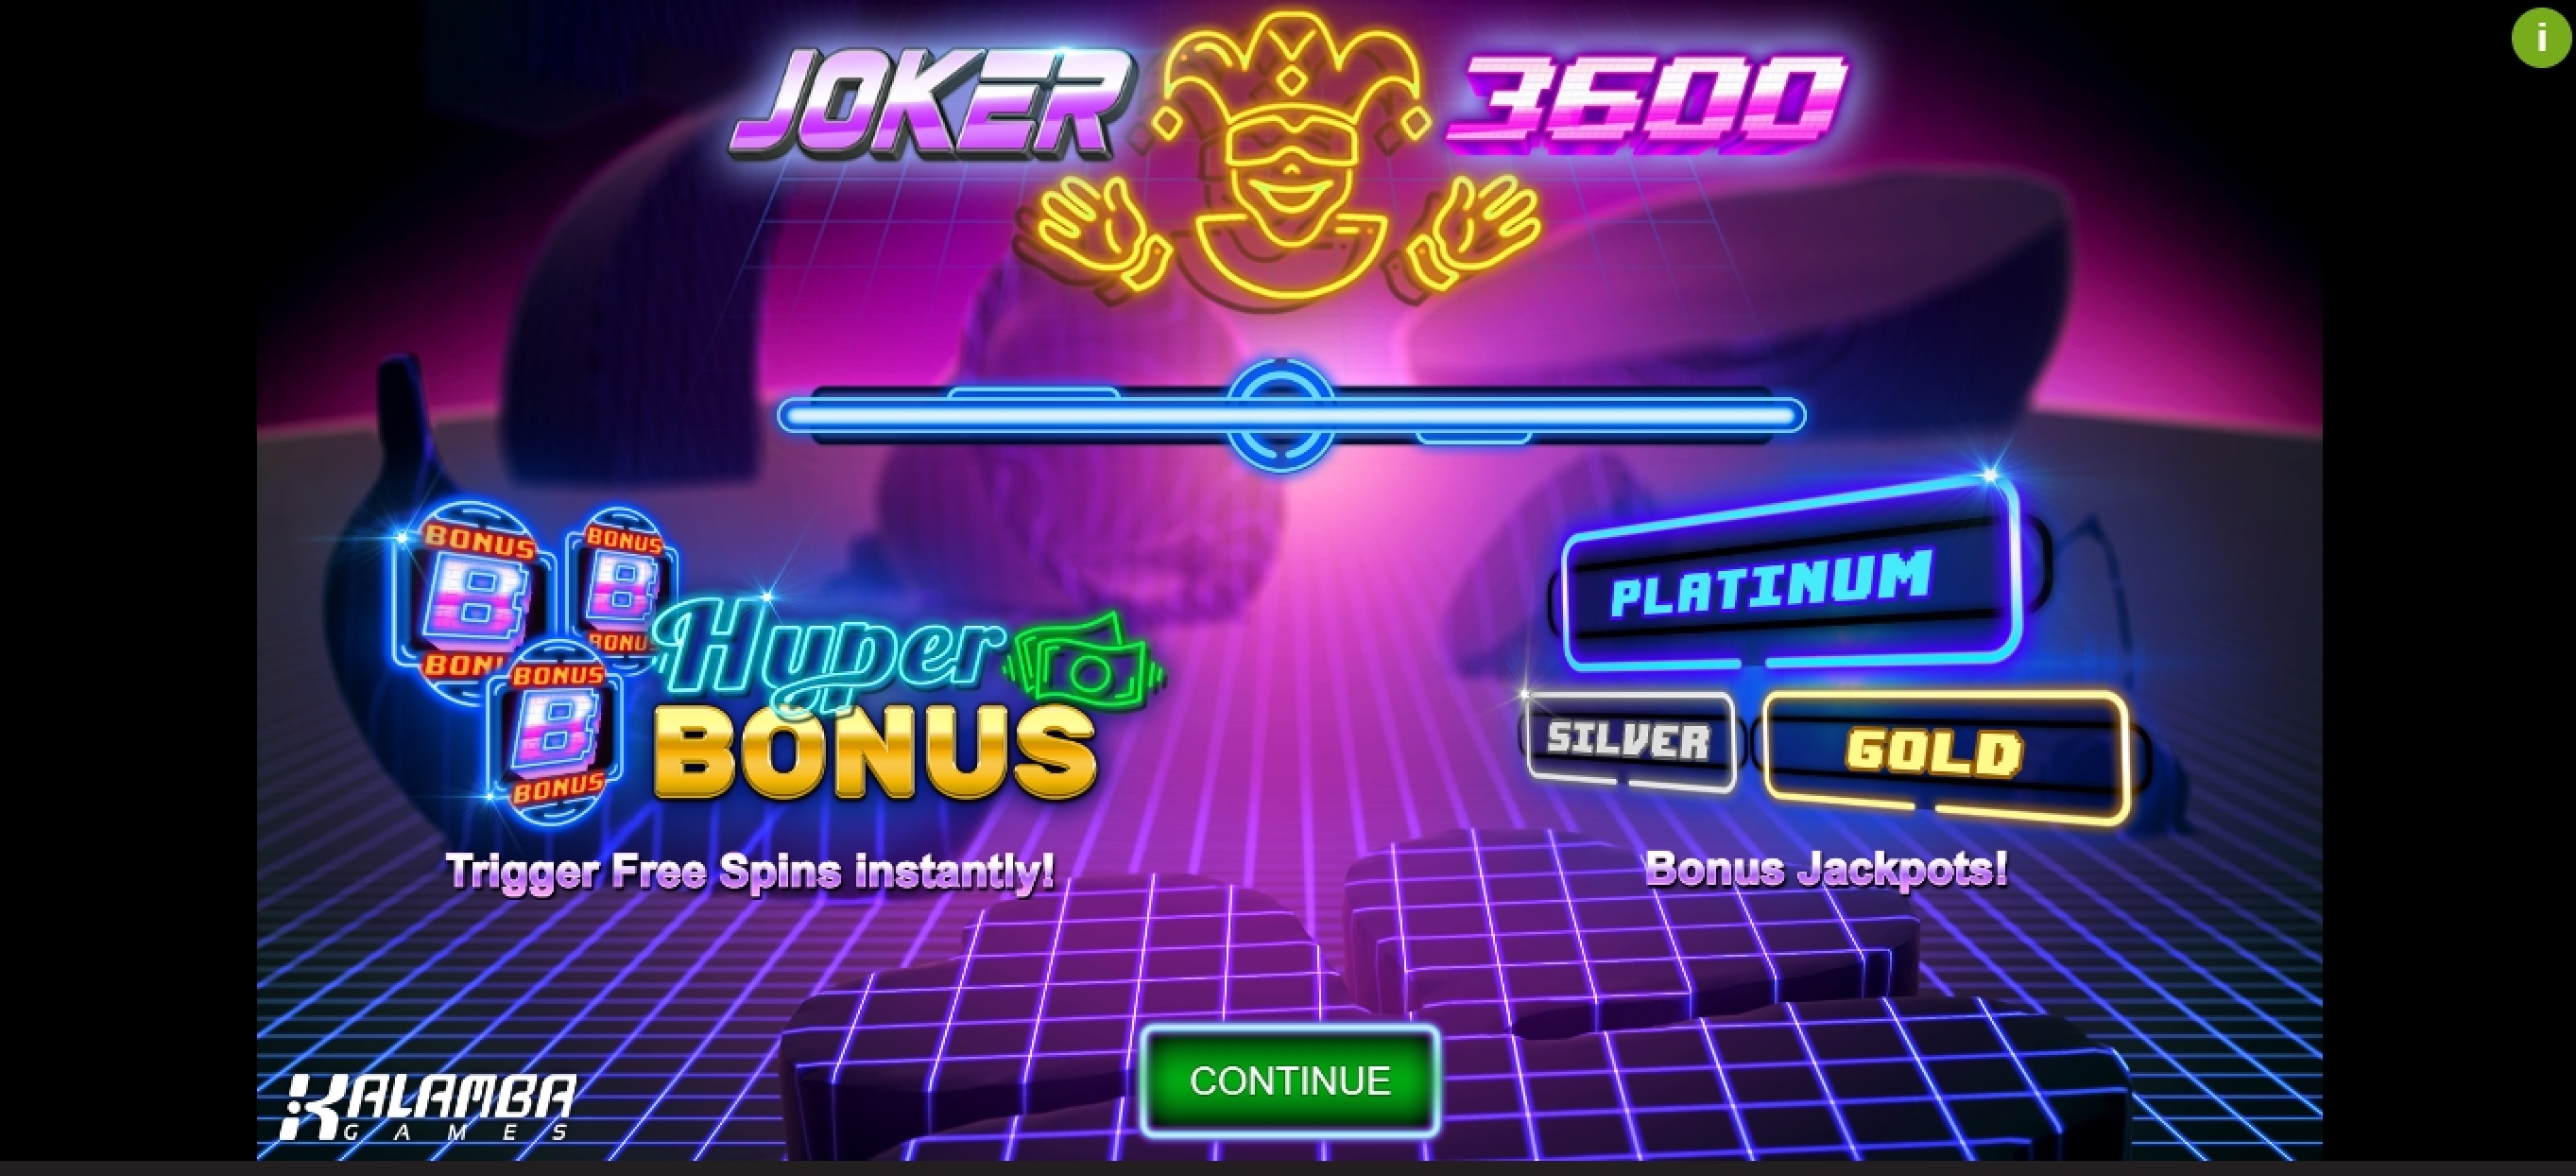 Play Joker 3600 Free Casino Slot Game by Kalamba Games